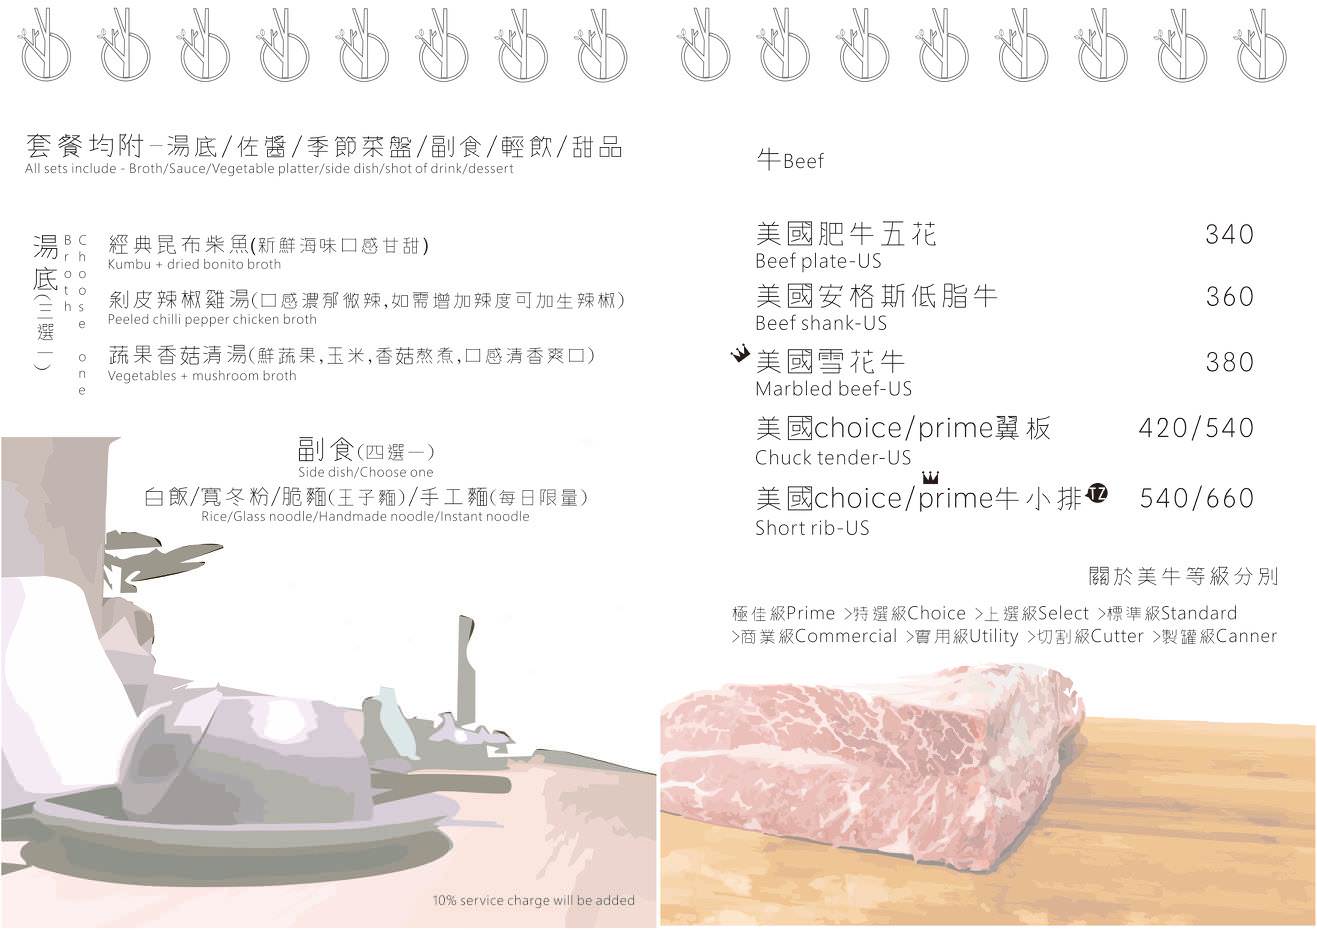 新竹火鍋|湯作鍋物|(巨城百貨旁)文青風火鍋屋~精緻肉片塔|不賣火鍋料~只有天然湯頭、蔬食和高檔肉品!